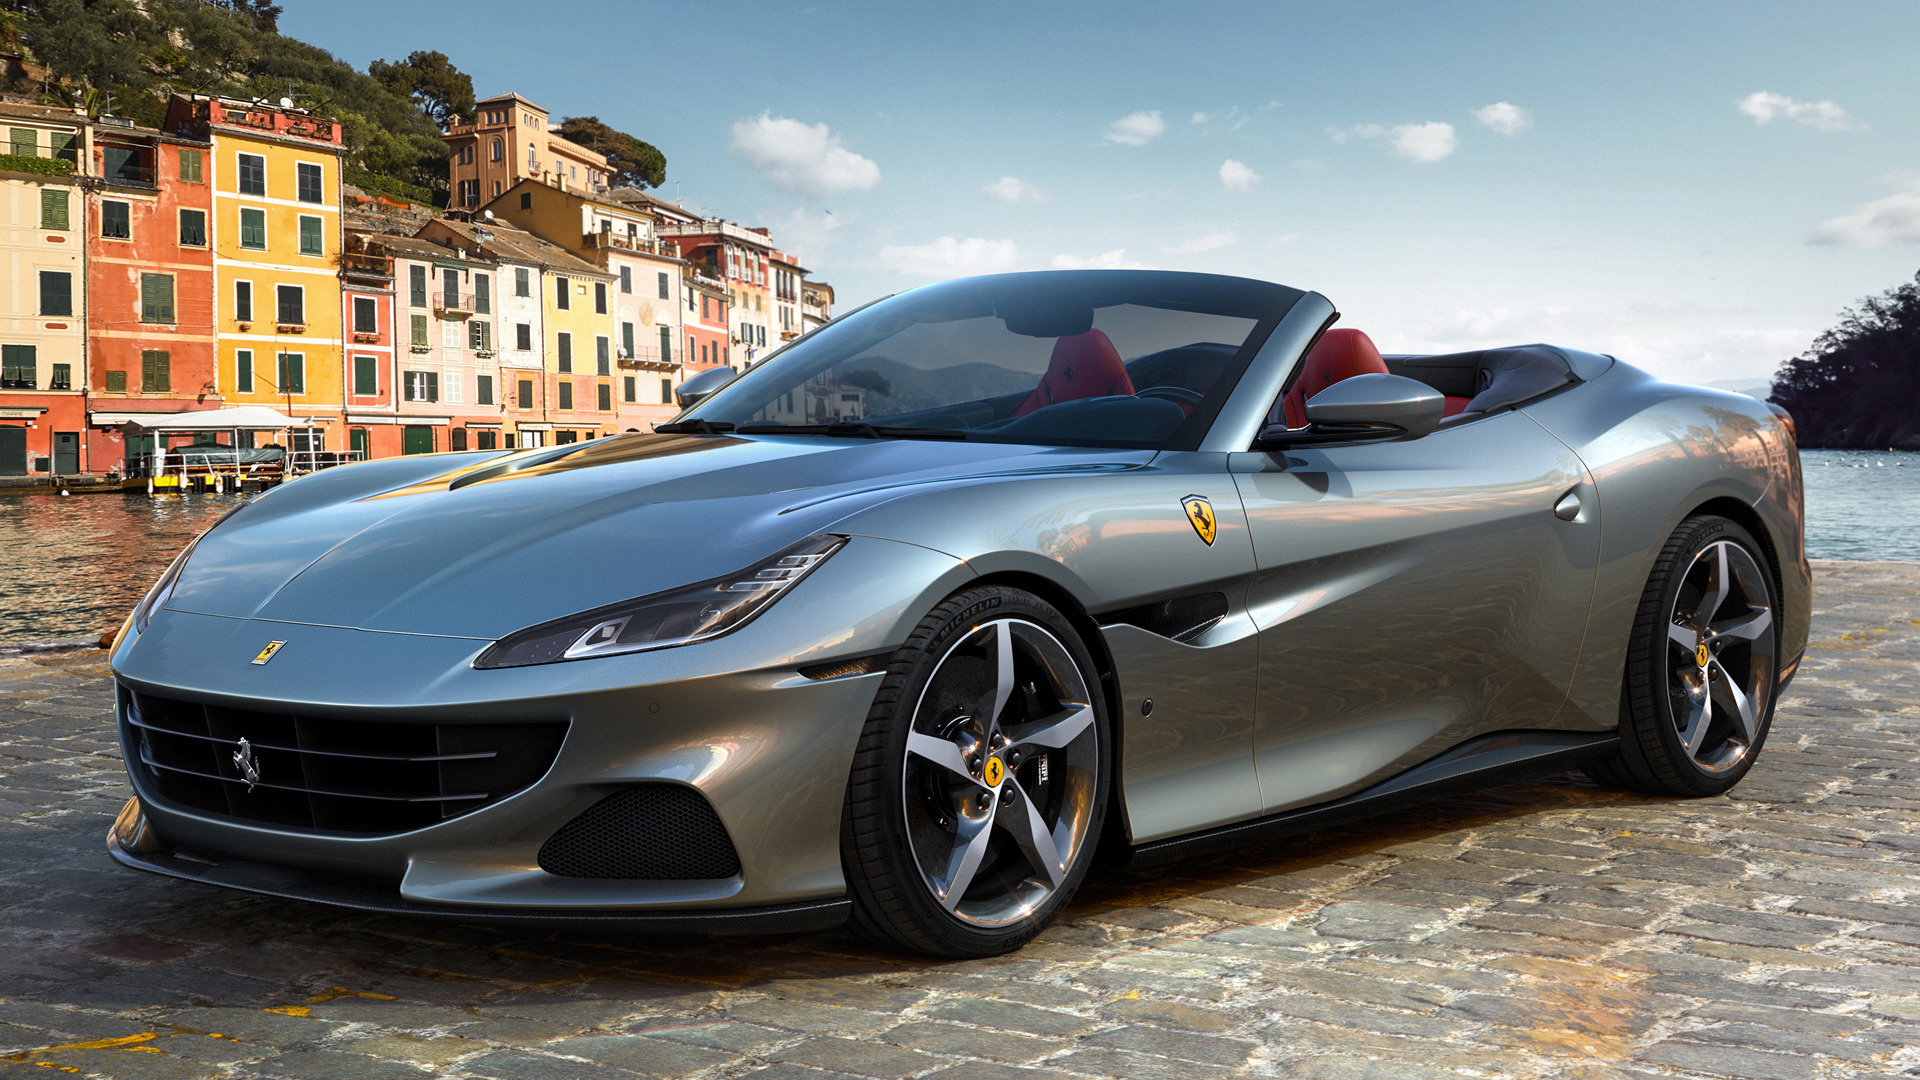 Télécharger des fonds d'écran Ferrari Portofino M HD